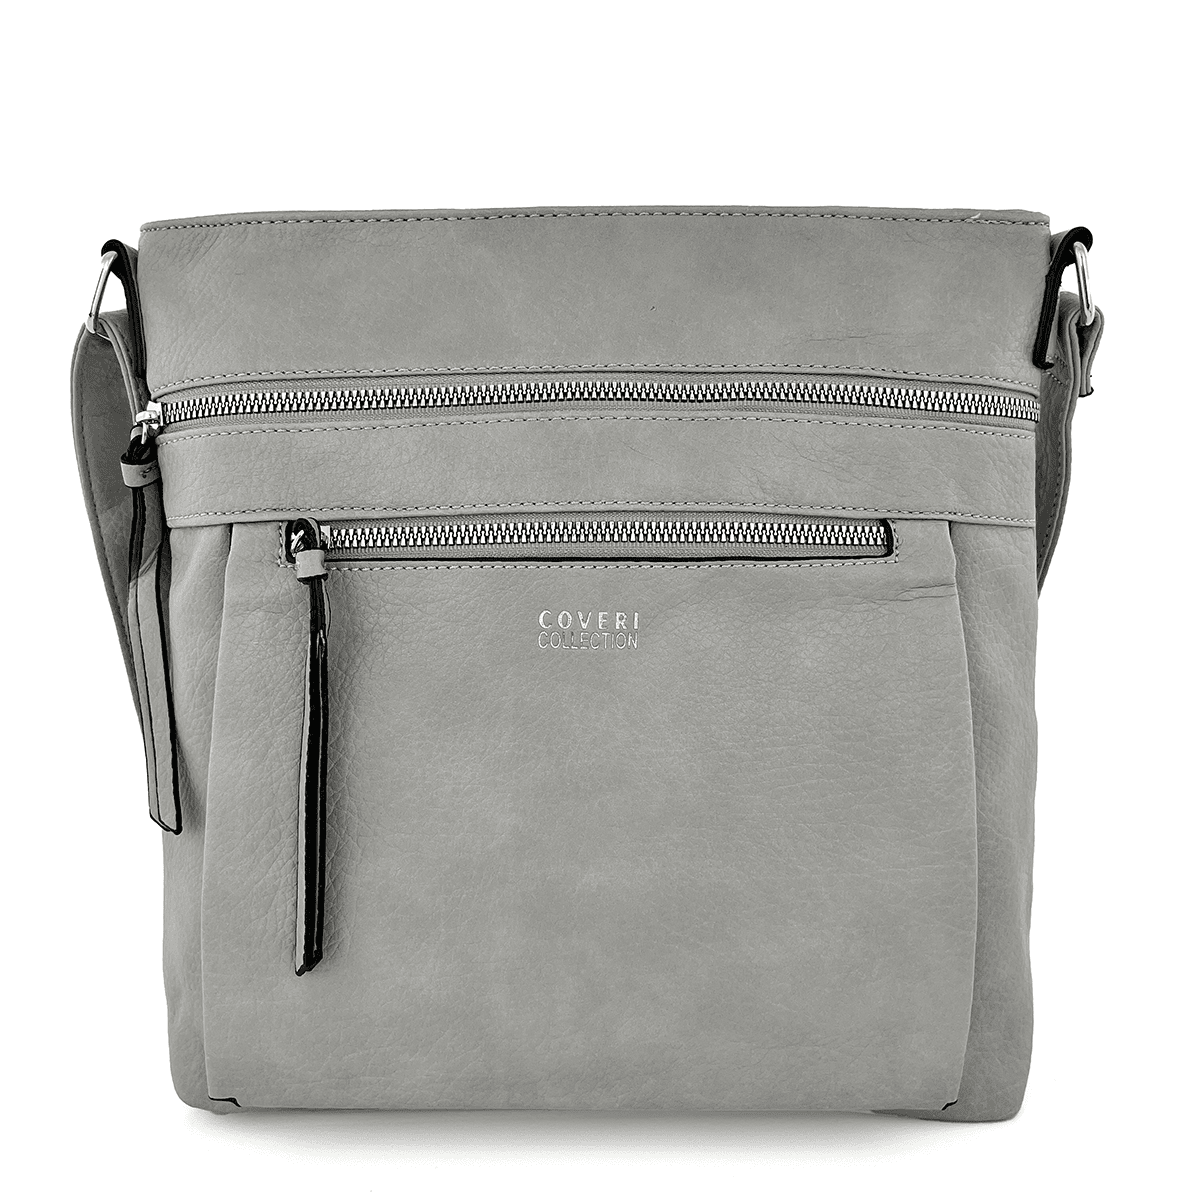 Дамска чанта за през рамо - светло сива 